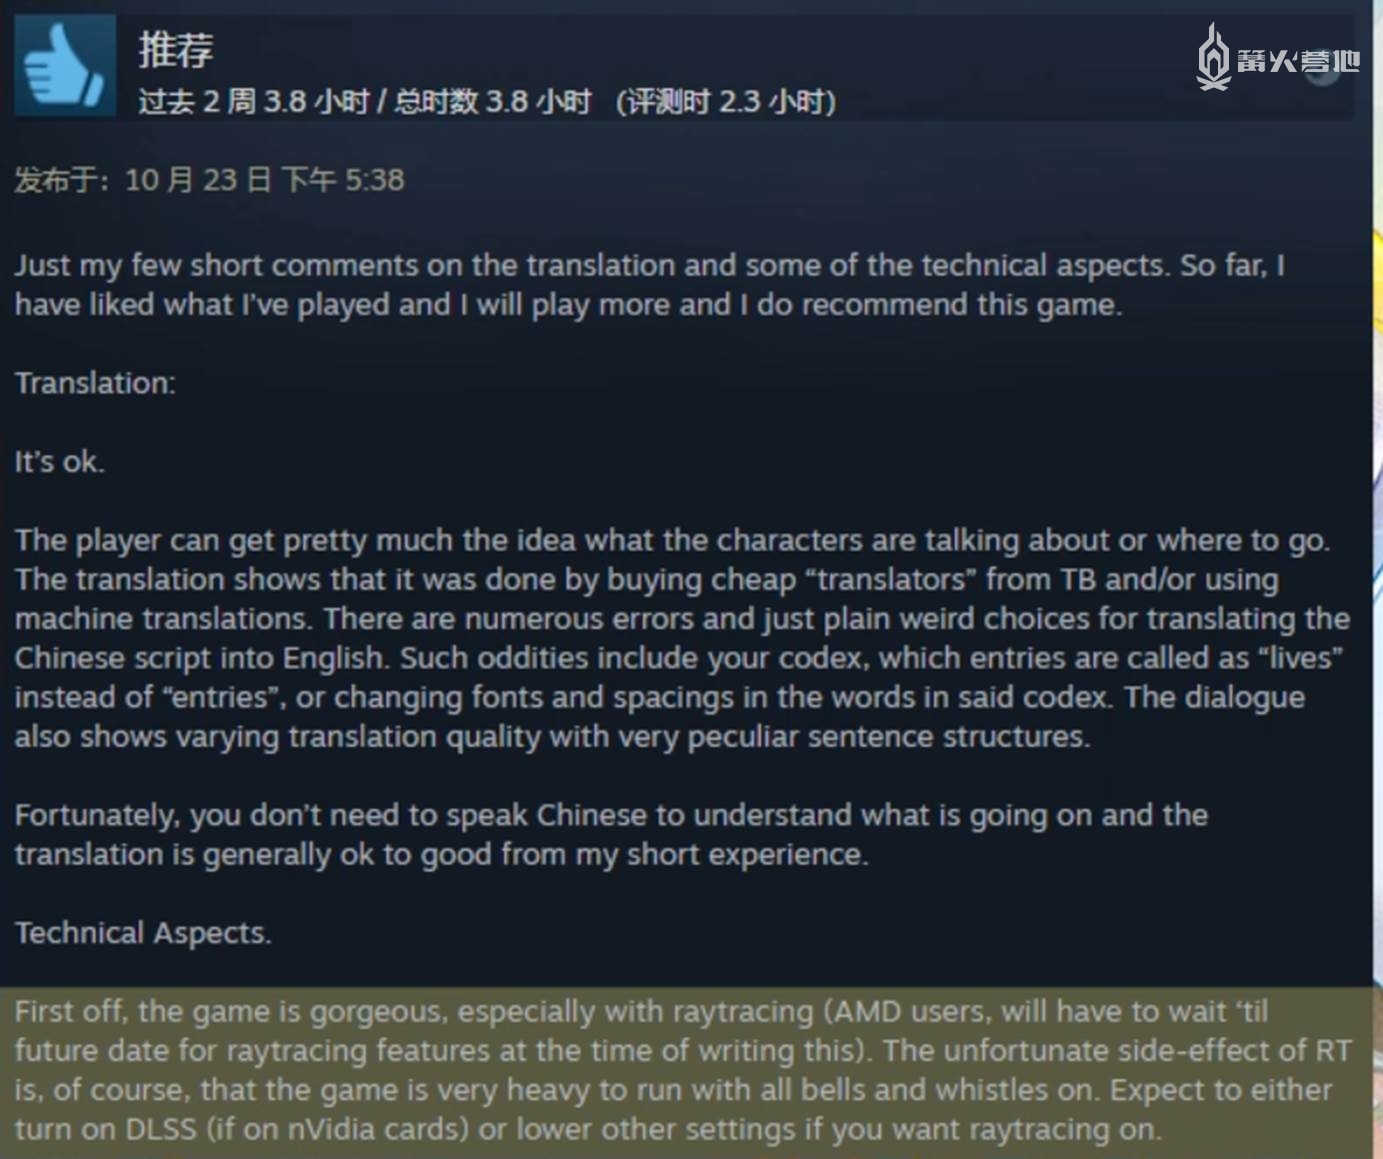 一位国外玩家在 Steam 上的评论，他表示虽然翻译和技术上有些问题，但自己非常喜欢《仙剑 7》，会一直玩下去。